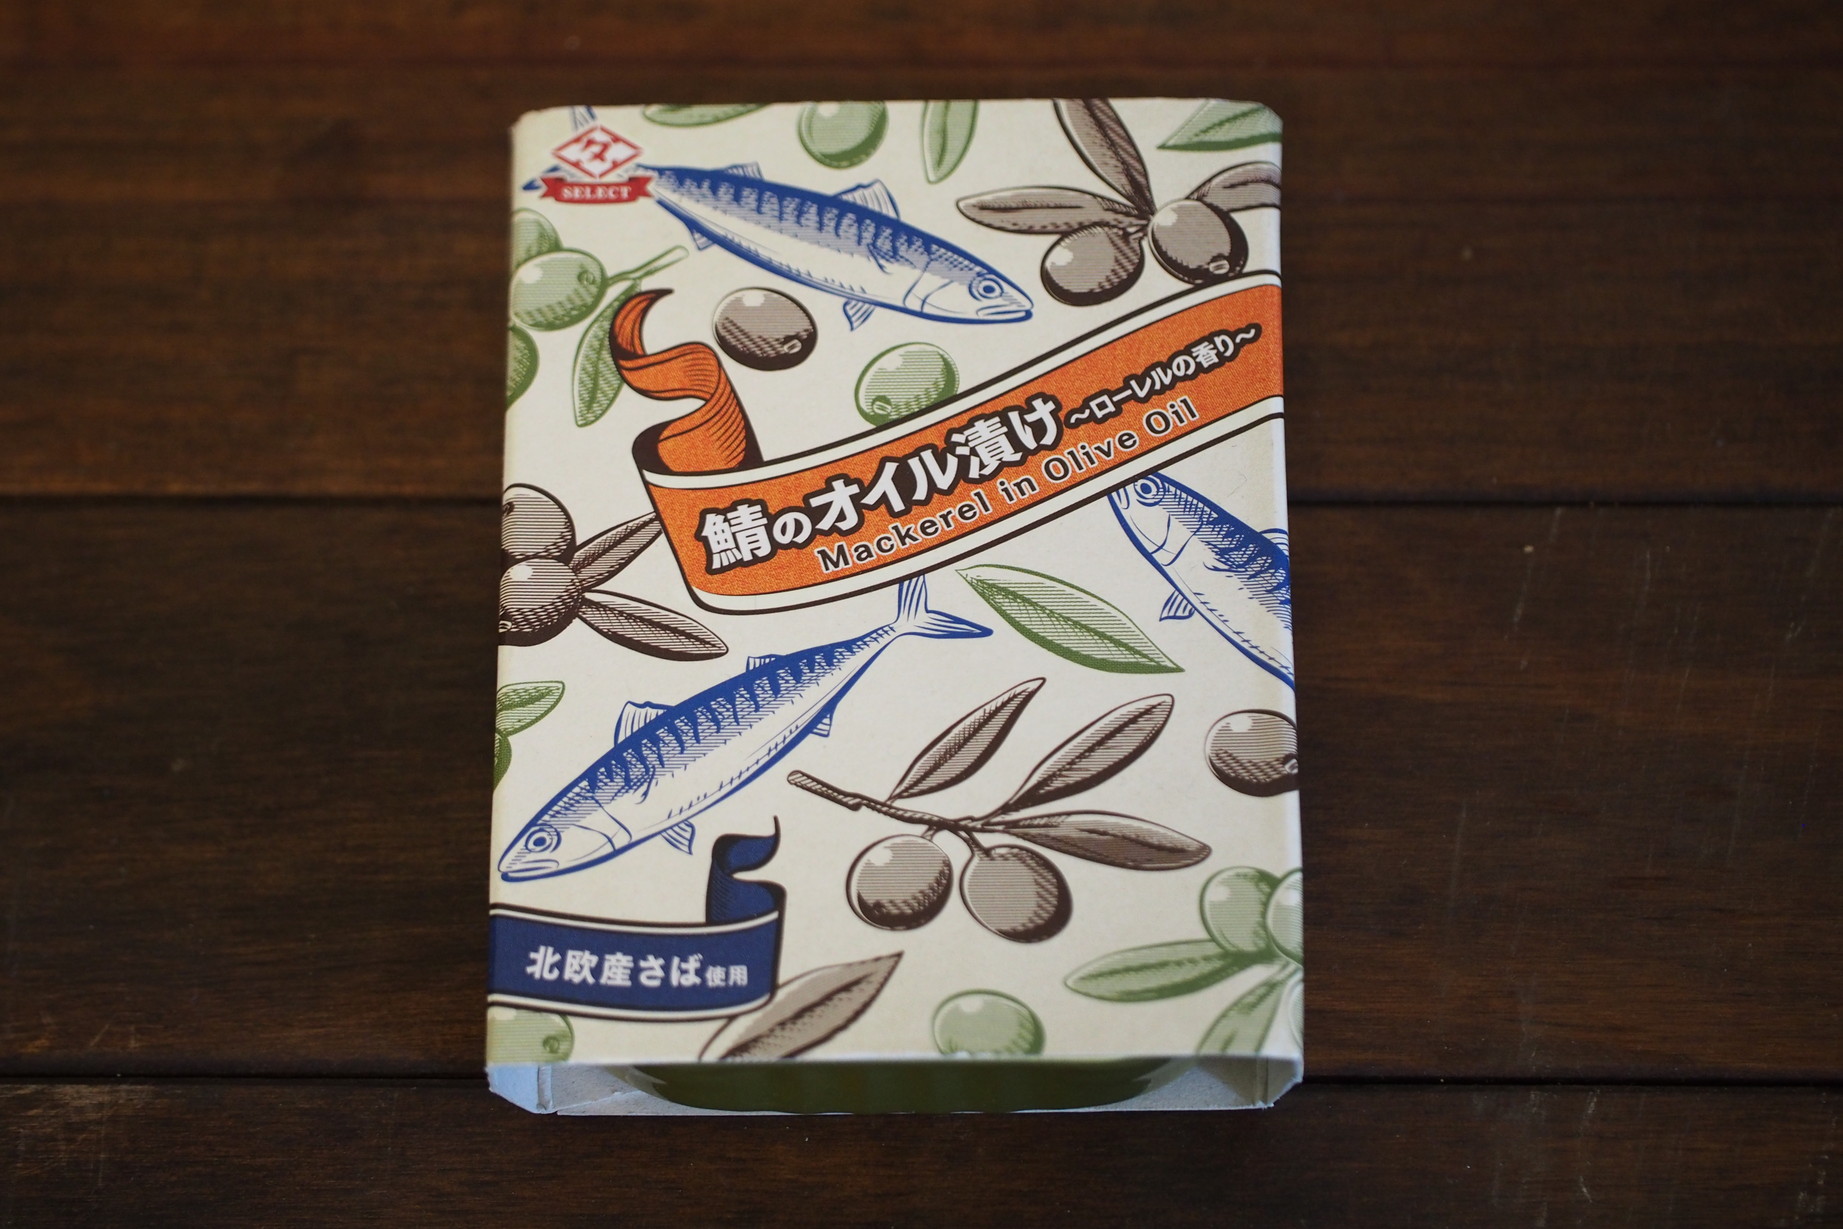 【おすすめサバ缶レビュー】『田原缶詰 ちょうした 鯖のオイル漬け』EXVオリーブオイルを使った贅沢オサレサバ缶